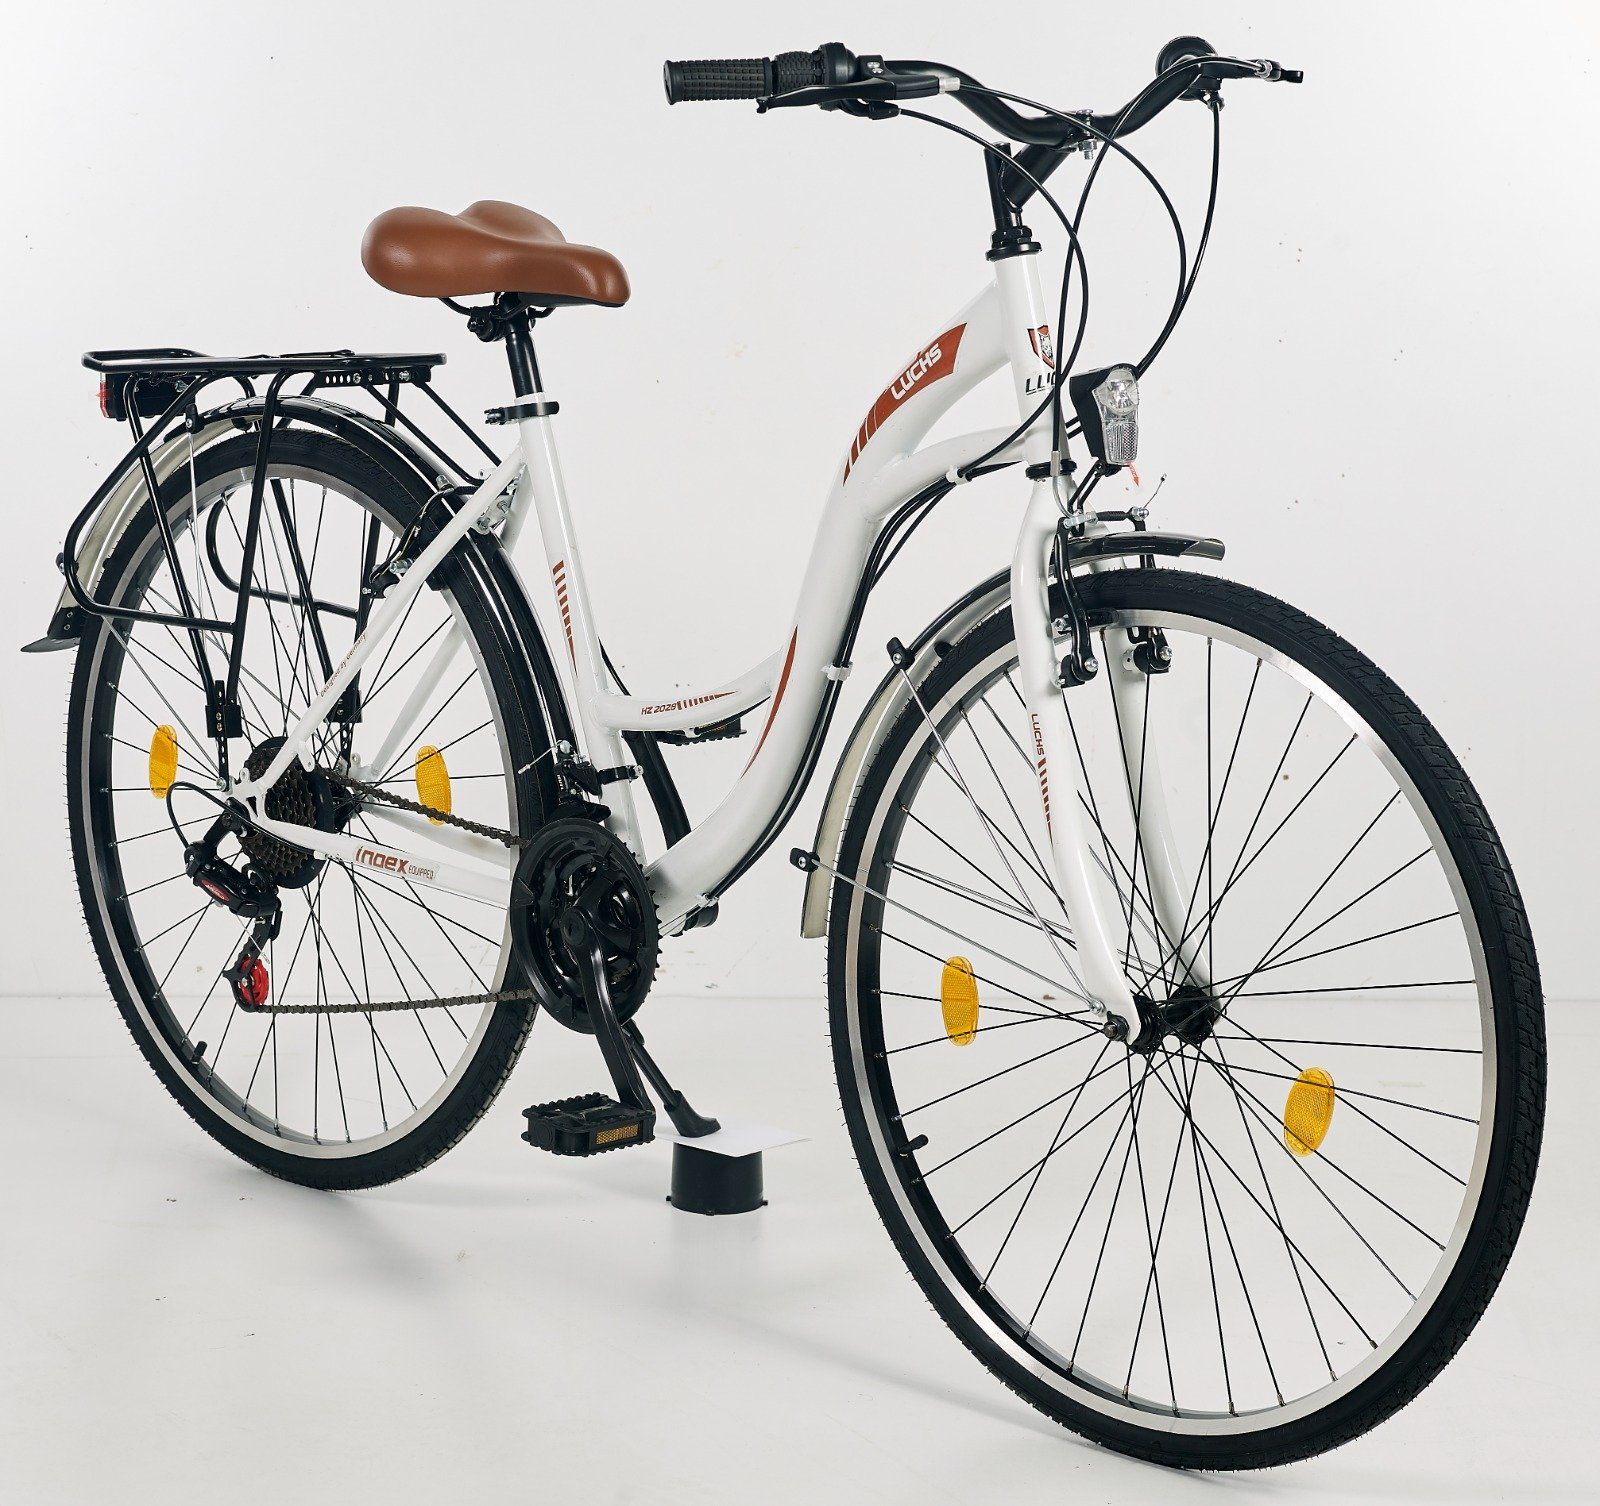 LUCHS Cityrad Fahrrad 28 Zoll - Fahrrad Damen - Hollandfahrrad, 21 Gang Shimano, Damenfahrrad Trekkingrad im Stvzo zugelassen